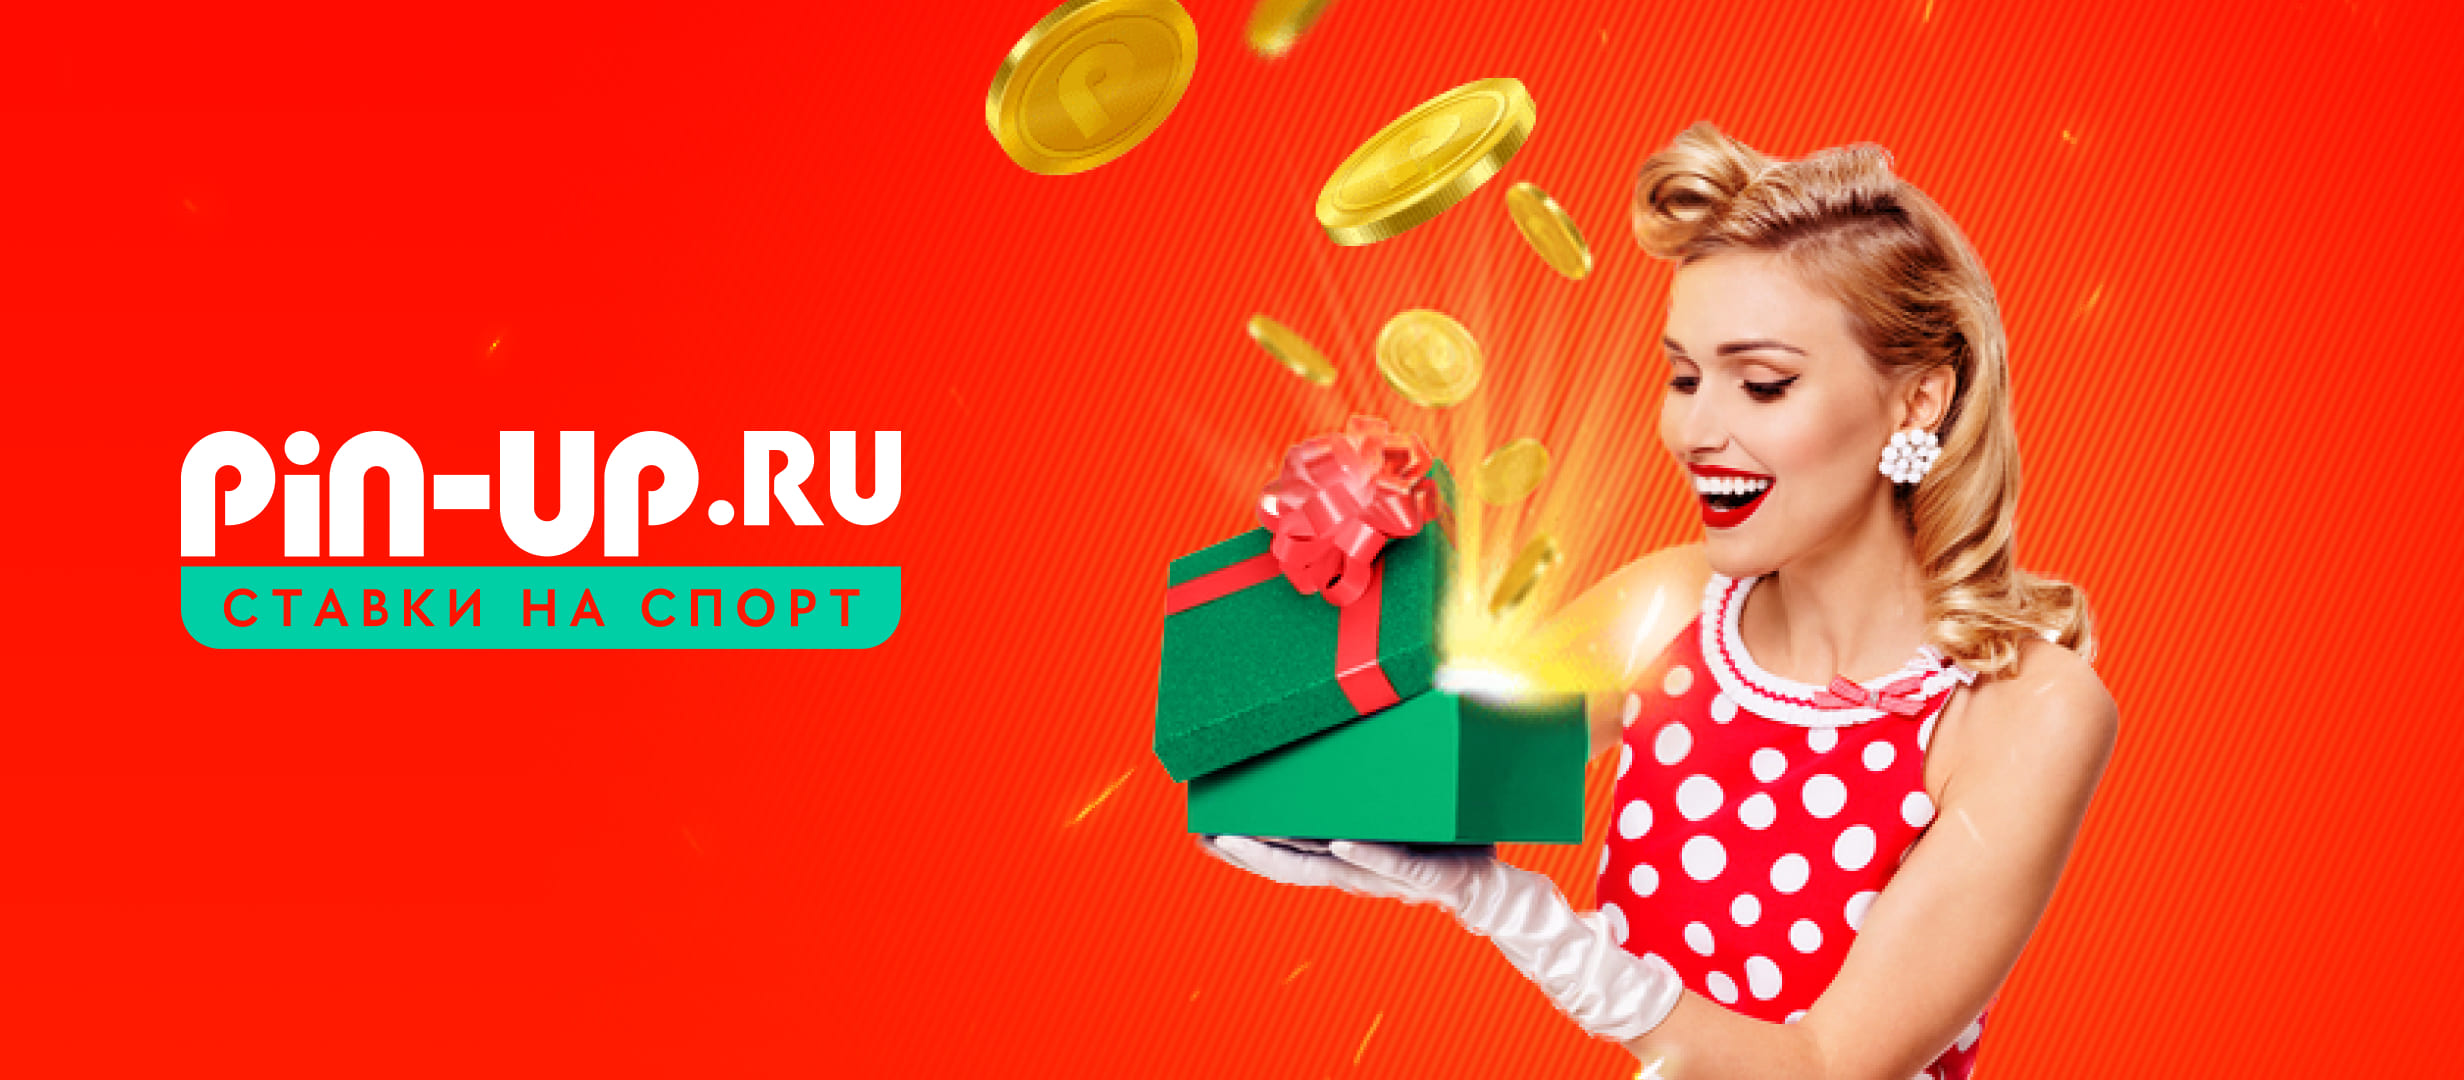 БК Pin-up.ru выдает 100% бонус за пополнение счета